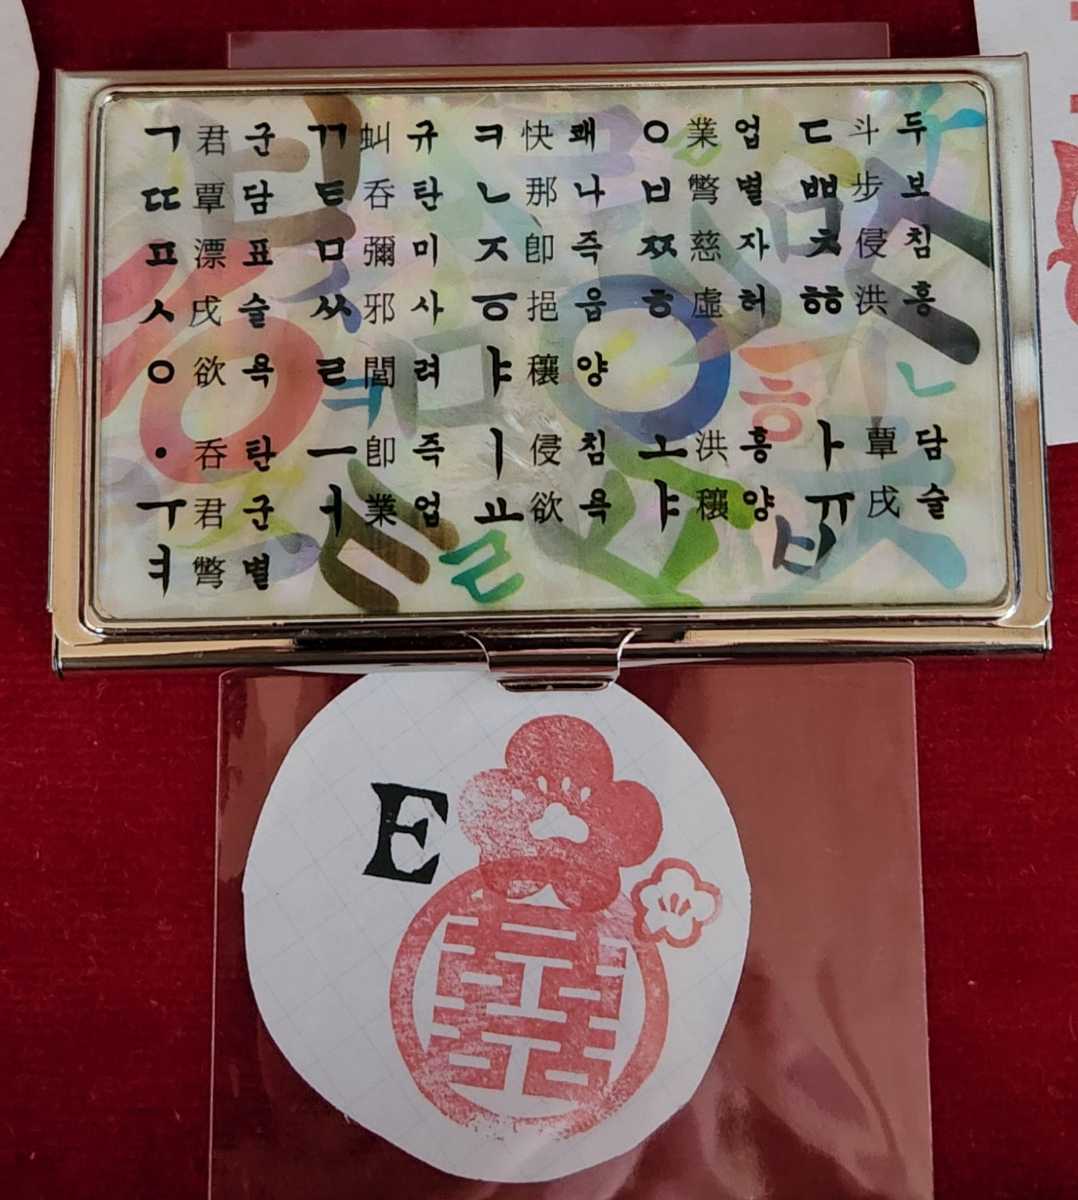  Корея изделие прикладного искусства футляр для визитных карточек E хангул знак иероглифы ( compact зеркало имеется )